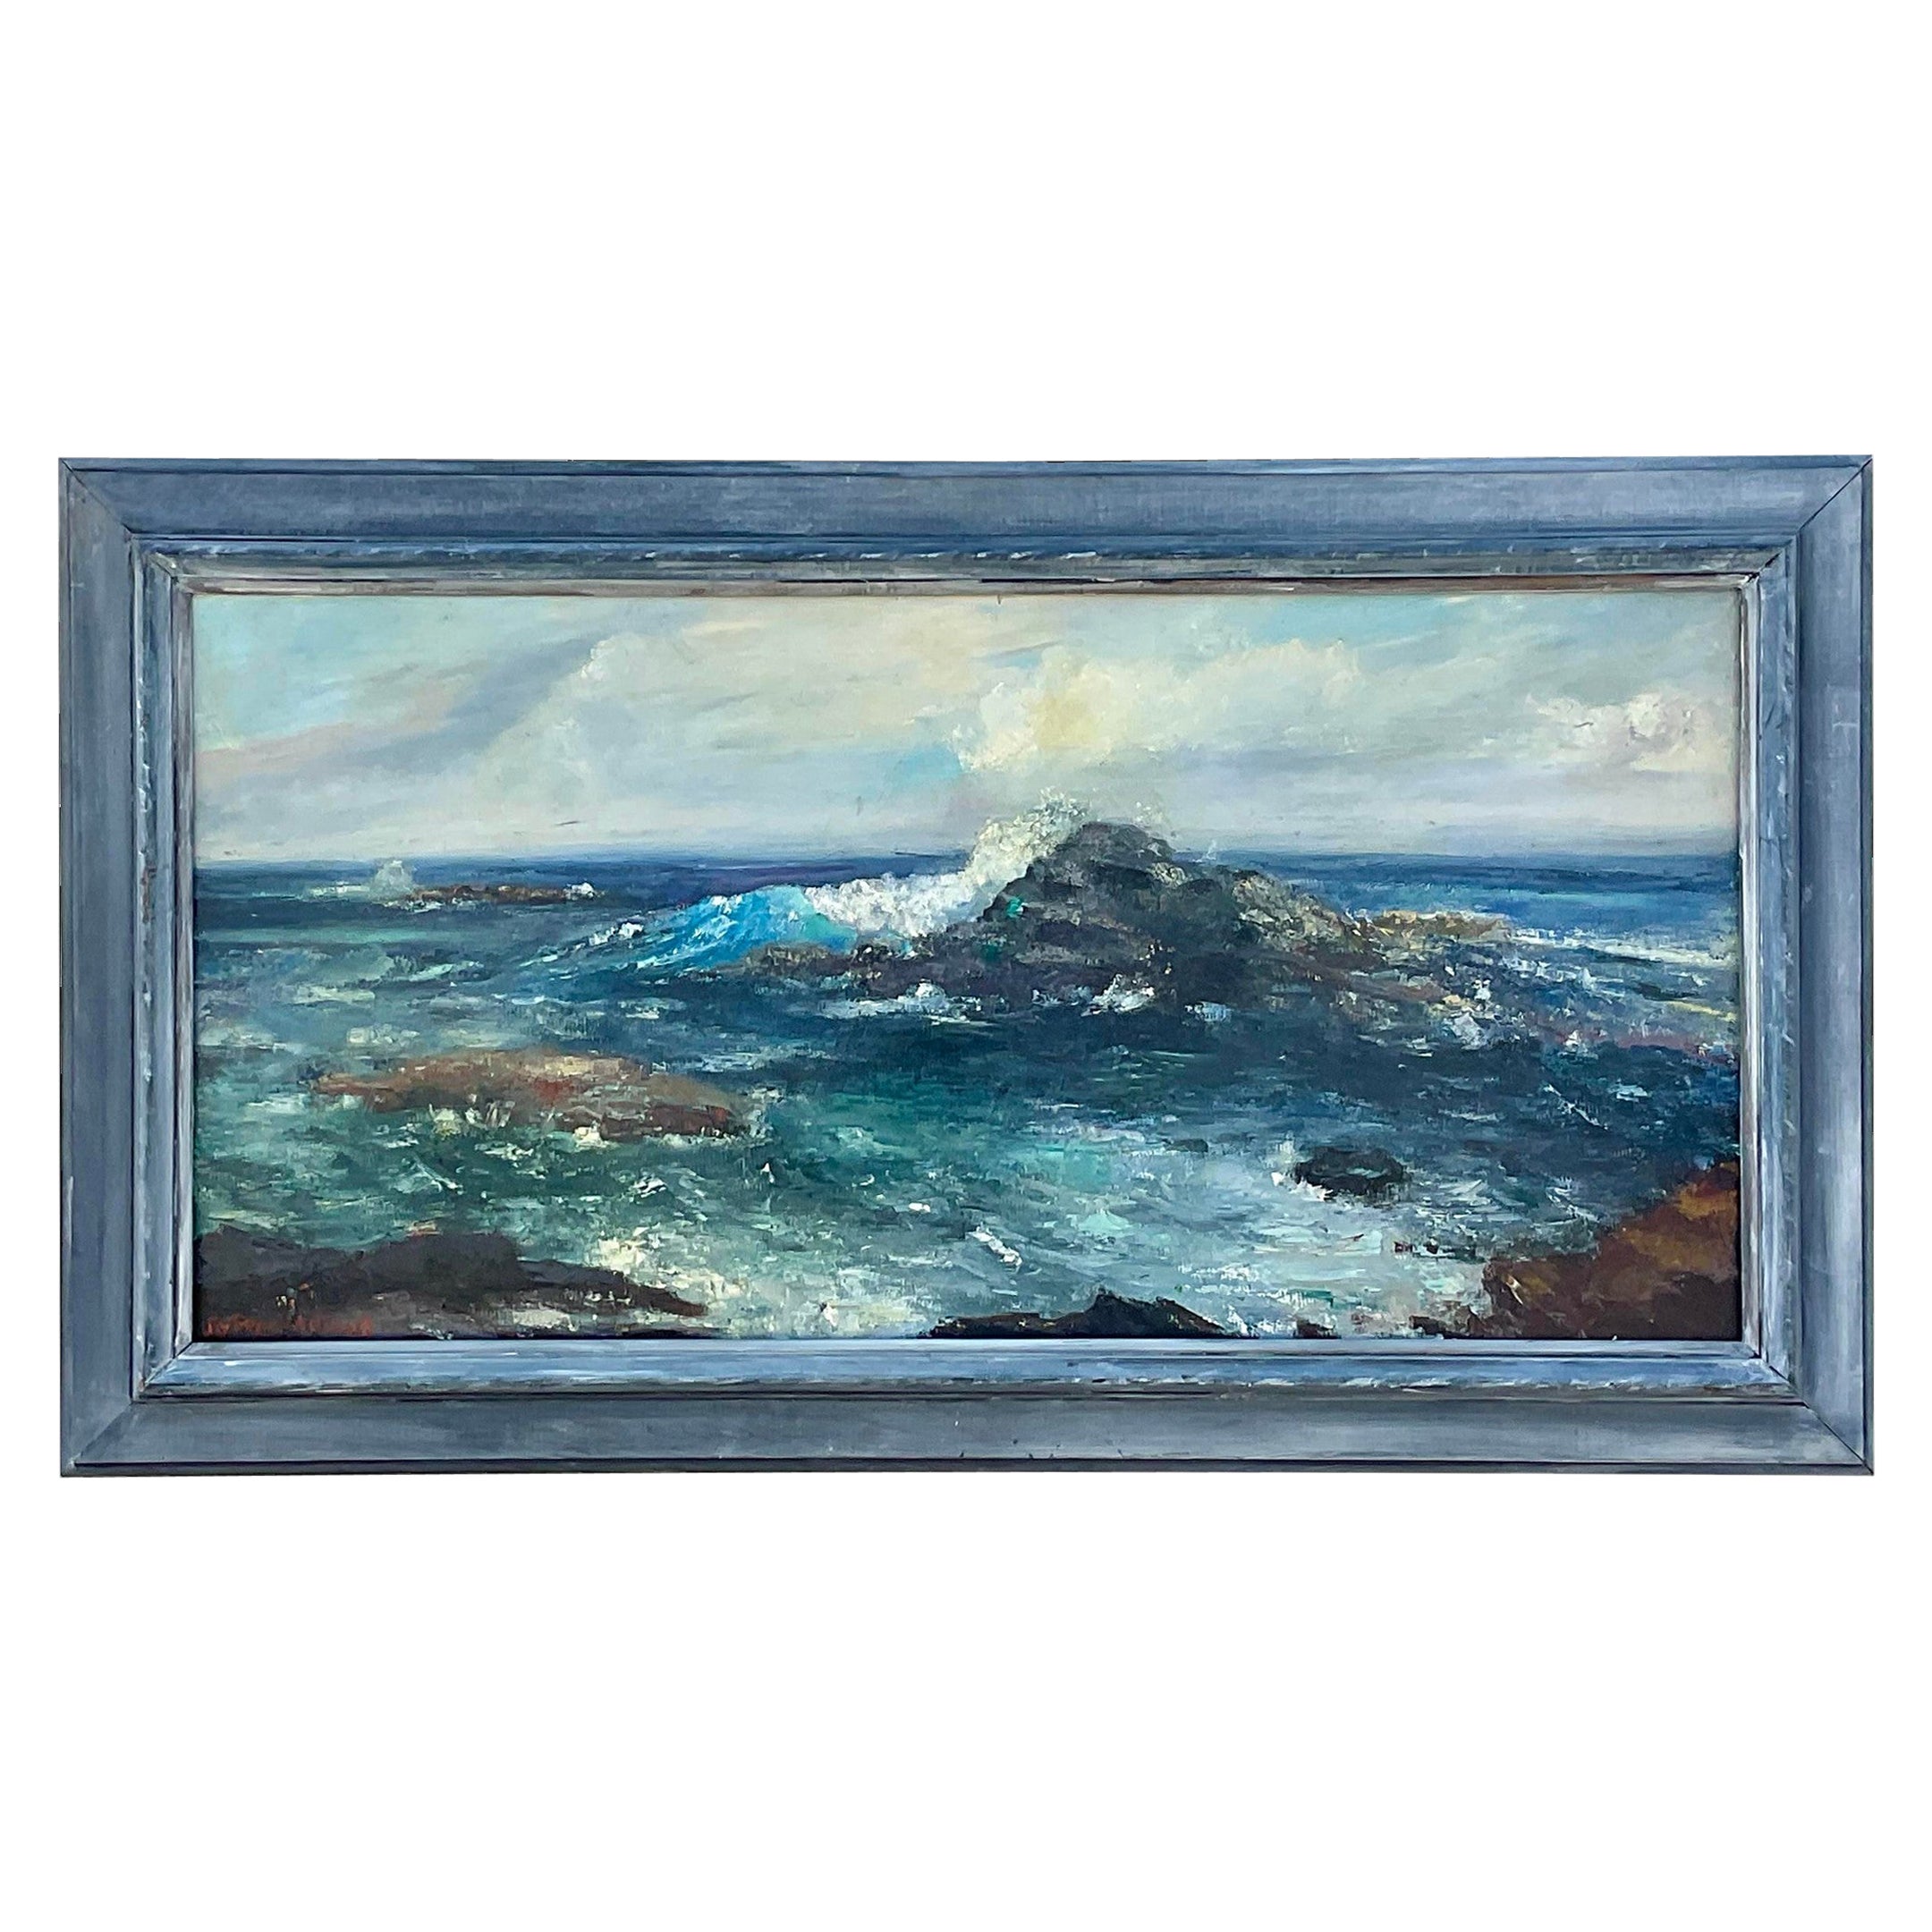 Vintage Coastal Original Oil Seascape Painting on Canvas